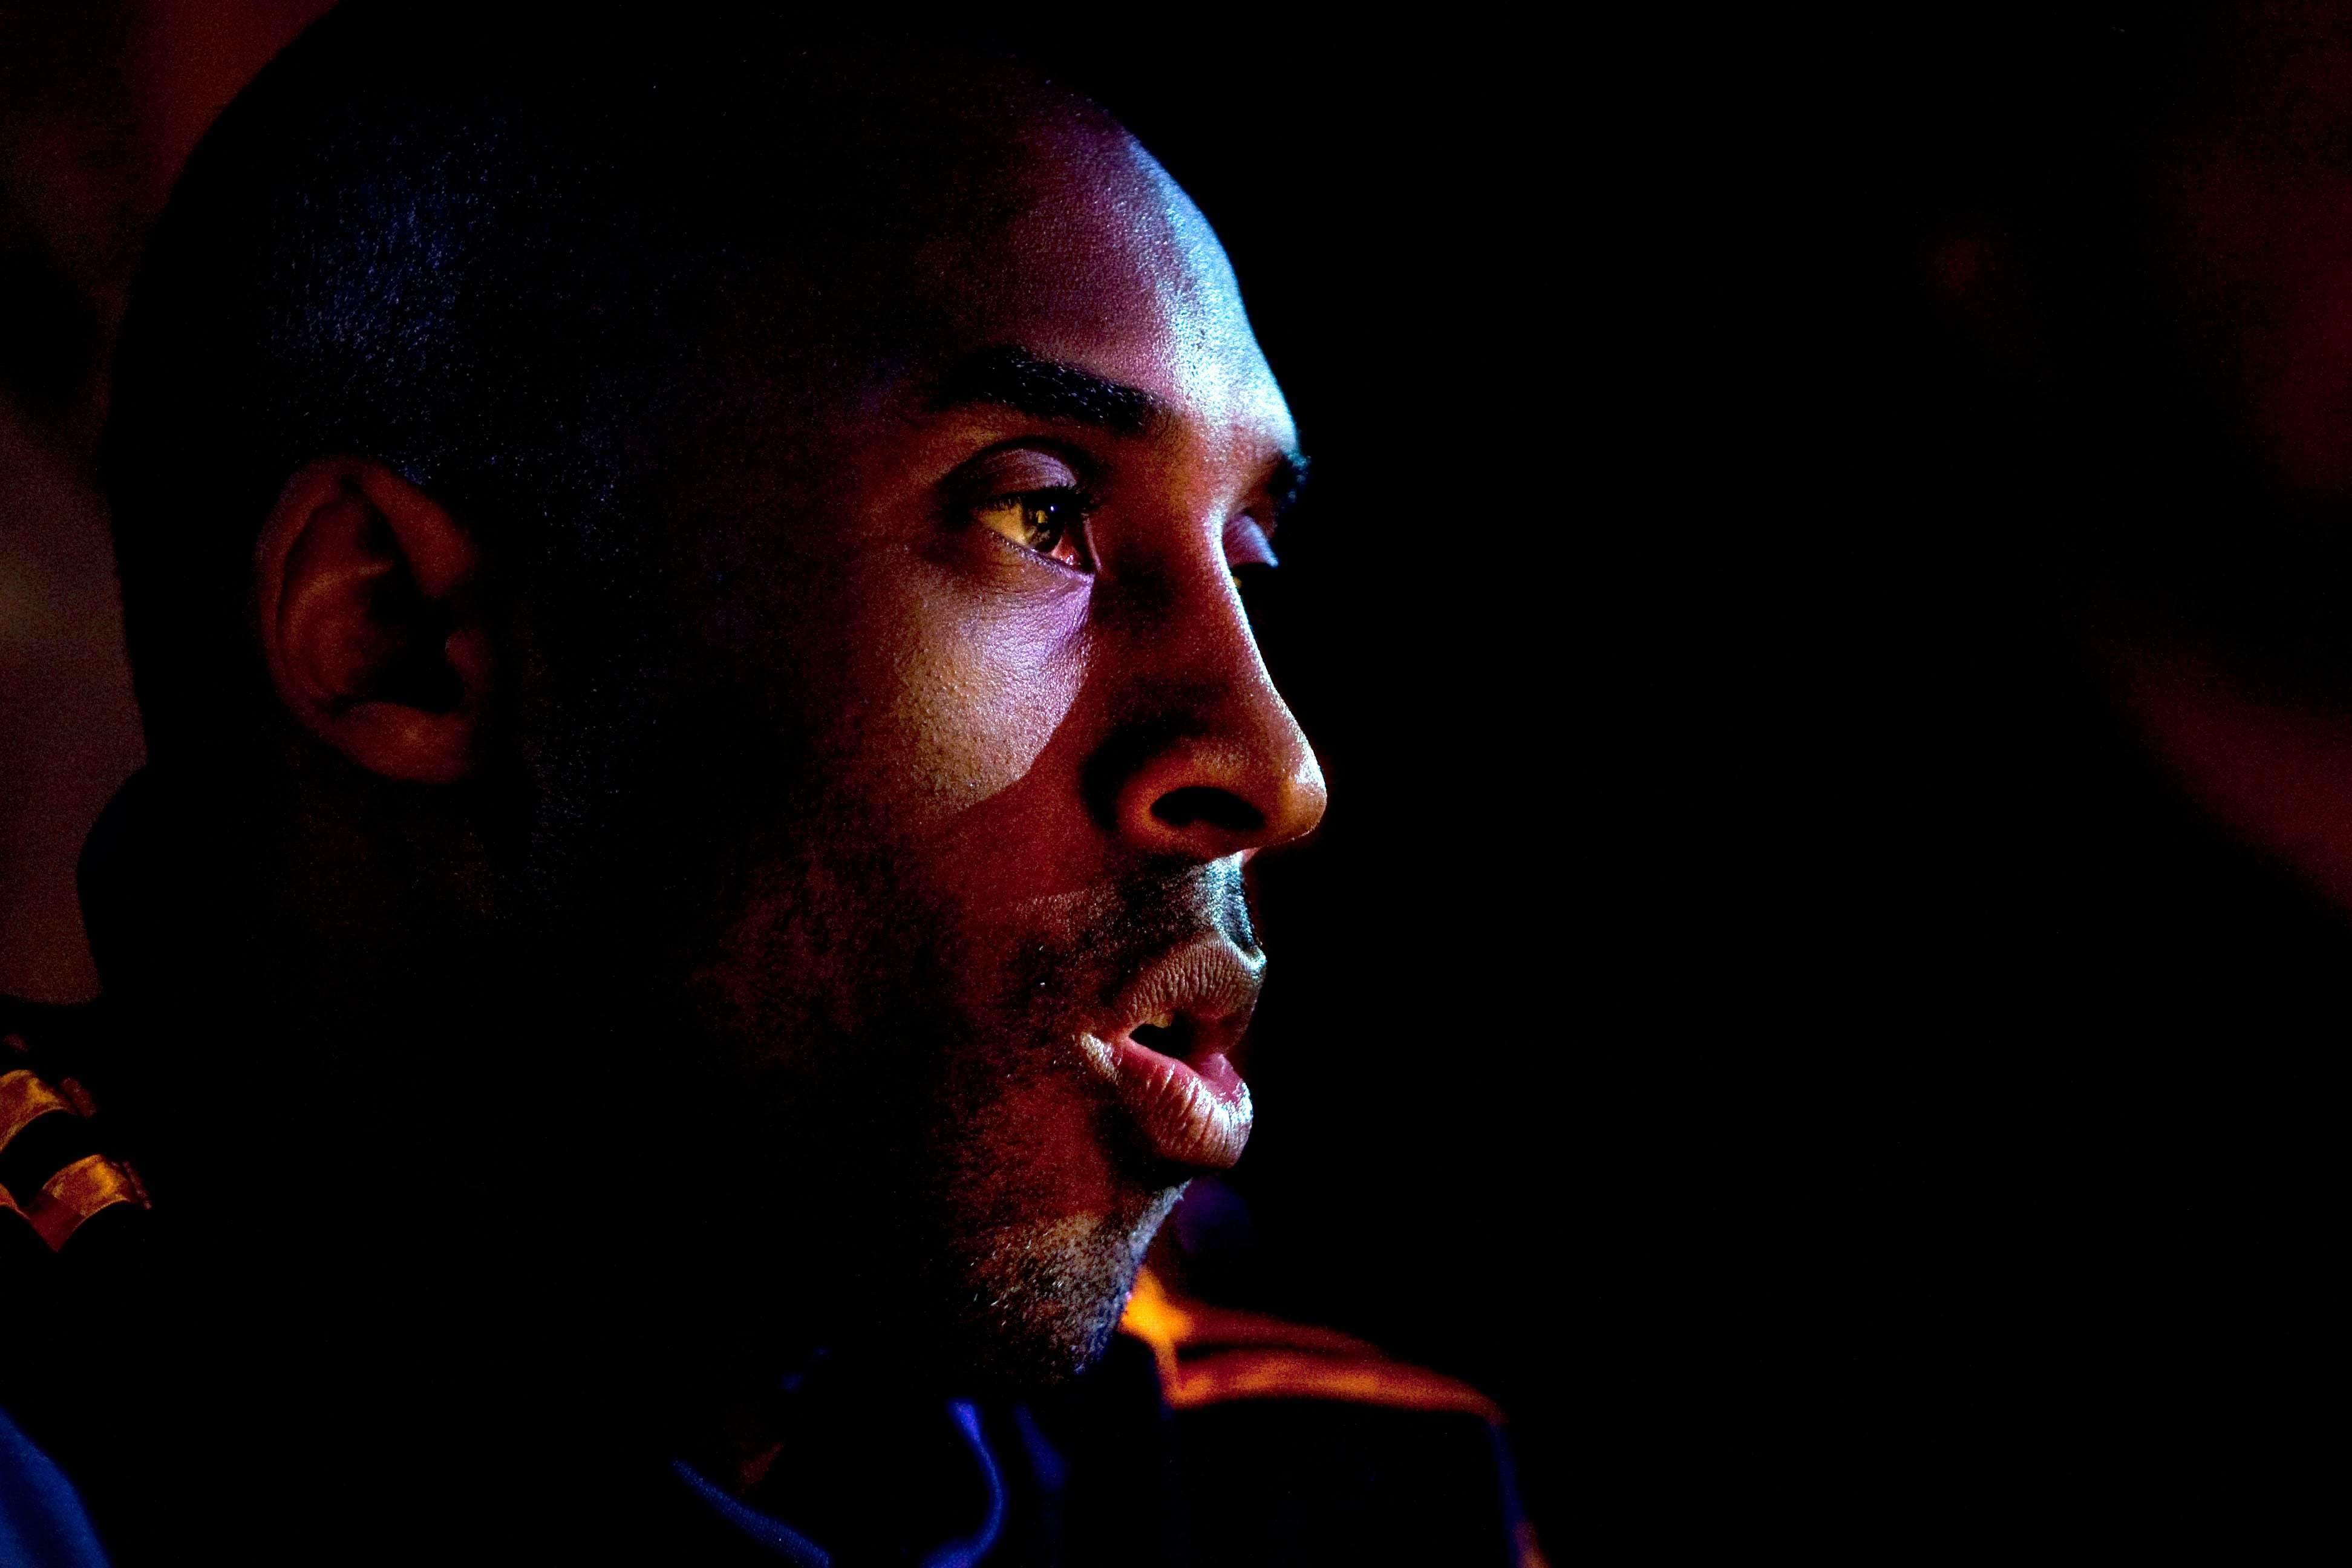 Kobe Bryant in a February 2010 photo.